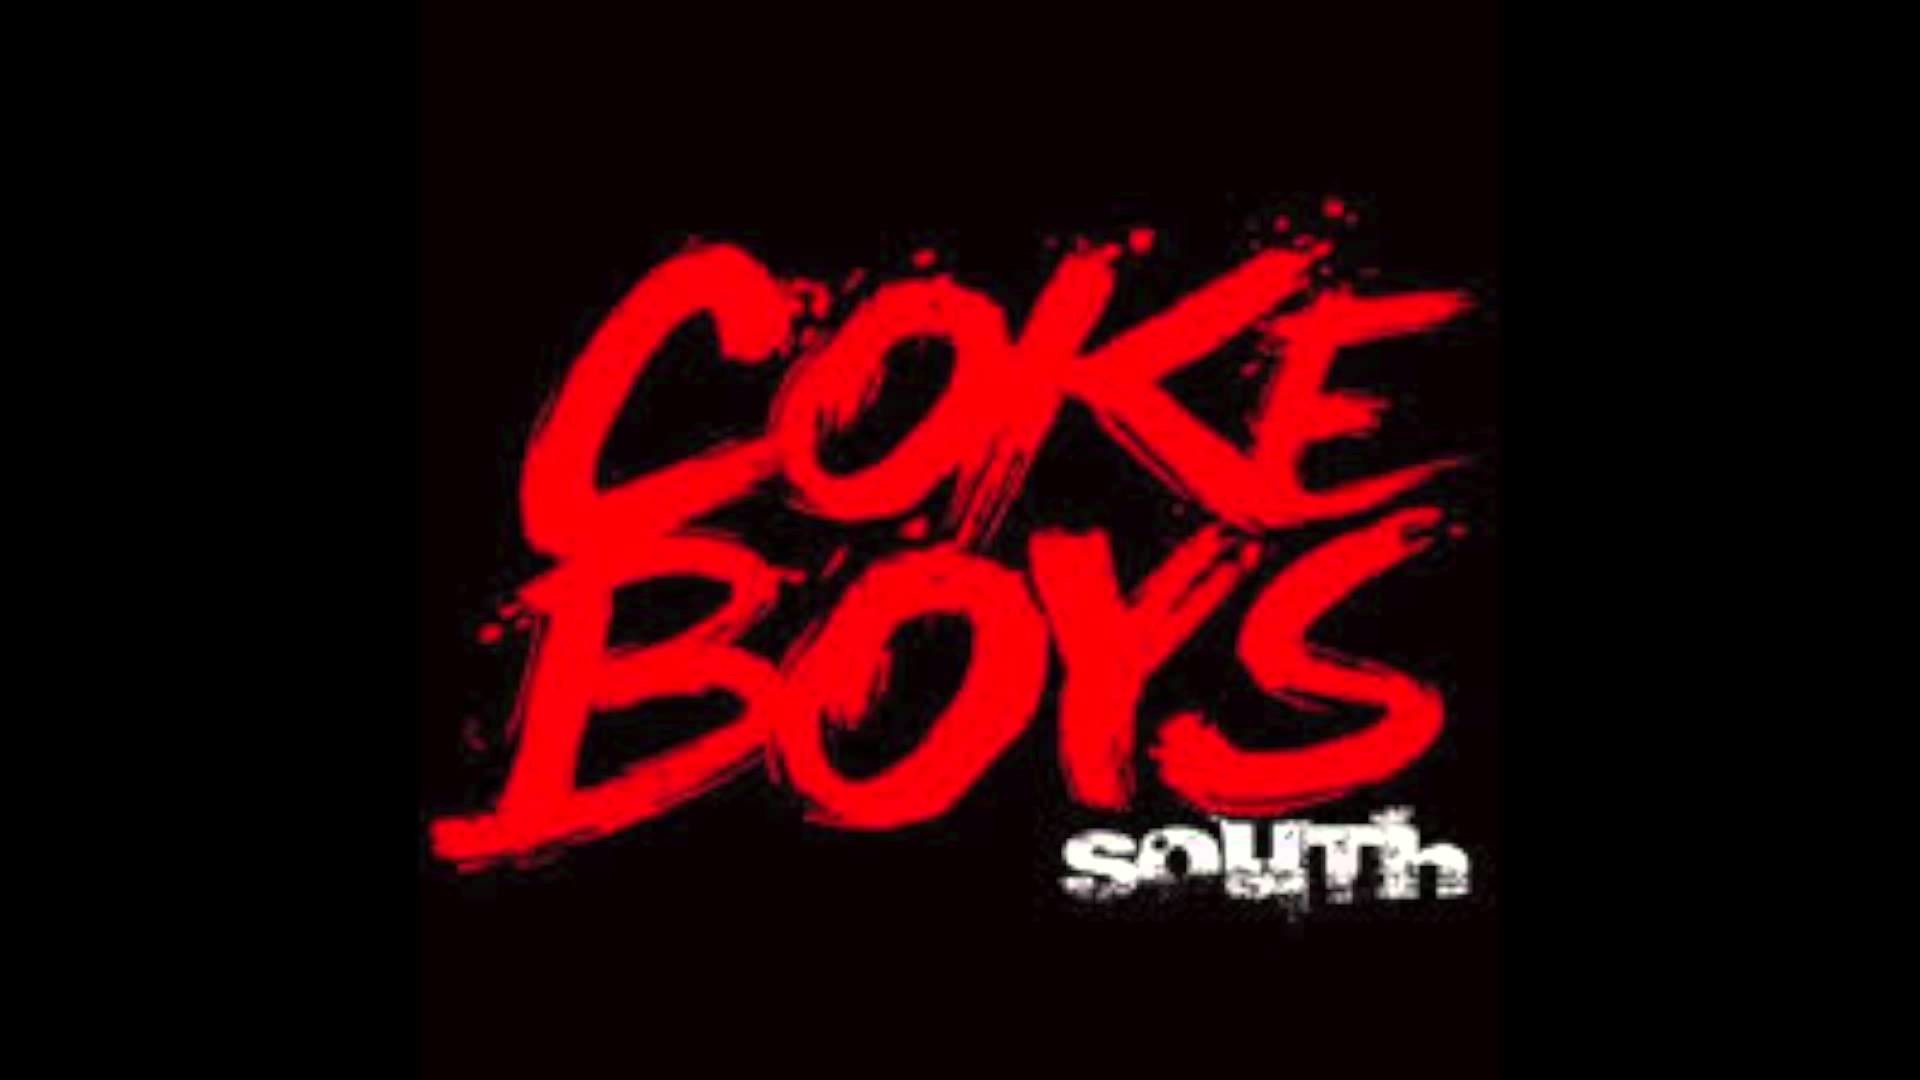 1920x1080 Coke Boys Wallpaper